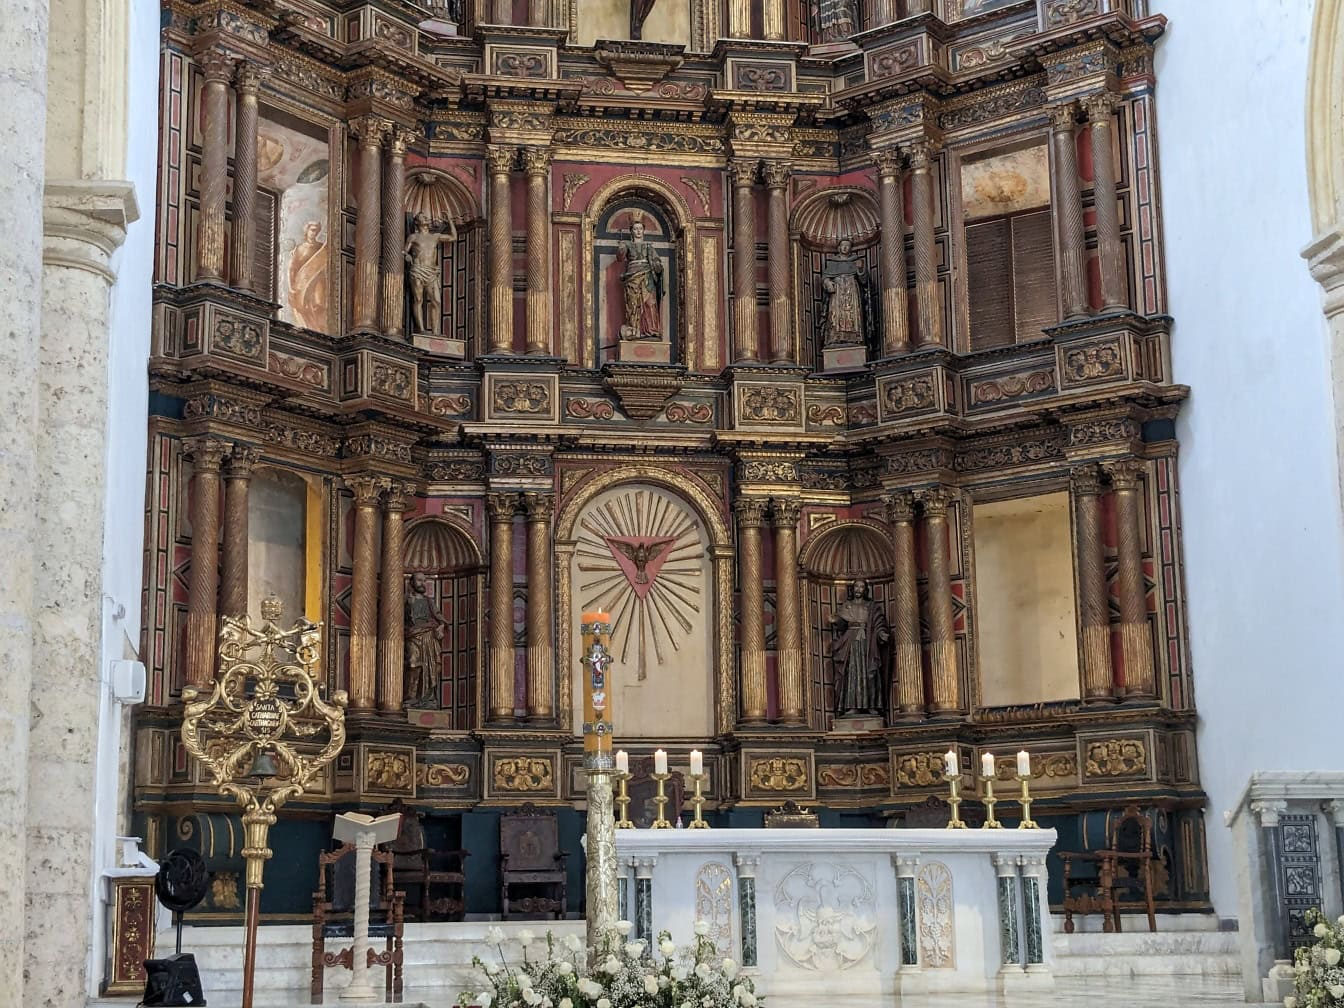 Altar ornamentado da igreja da catedral metropolitana basílica de Santa Catarina de Alexandria conhecida como catedral de Cartagena das Índias na Colômbia